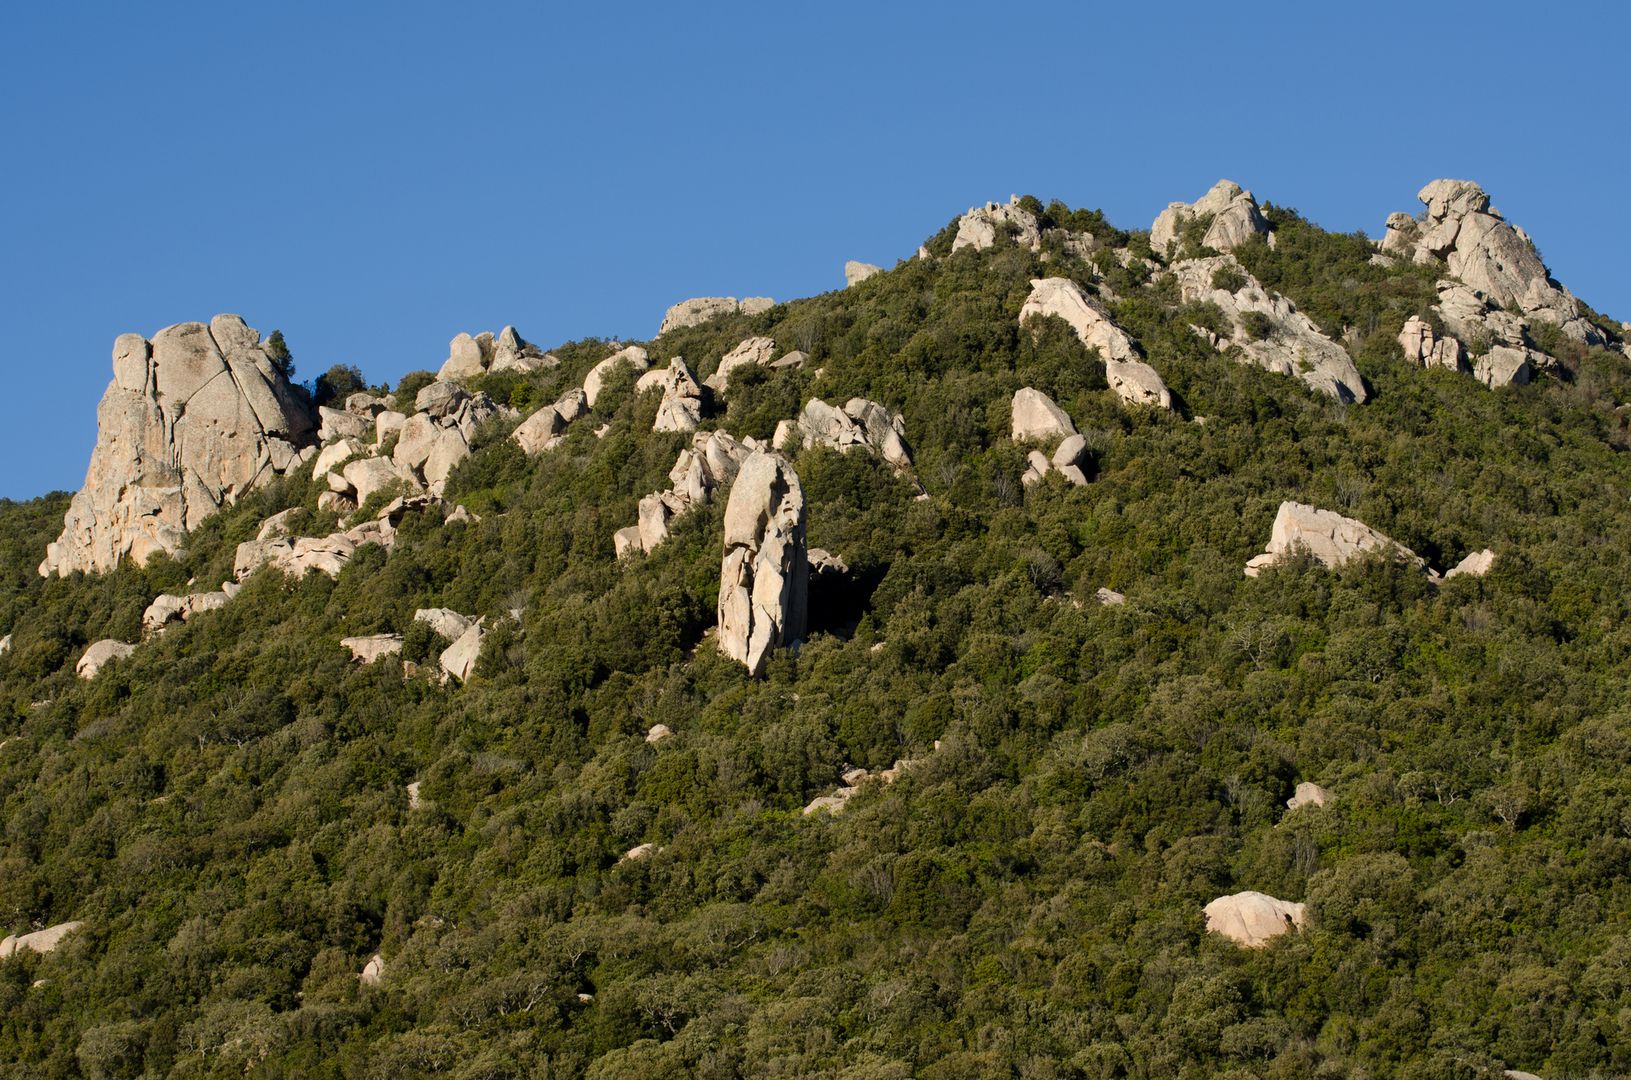 Antonio Concas - The high hills of Lu Sfussatu, between Luogosanto and Tempio